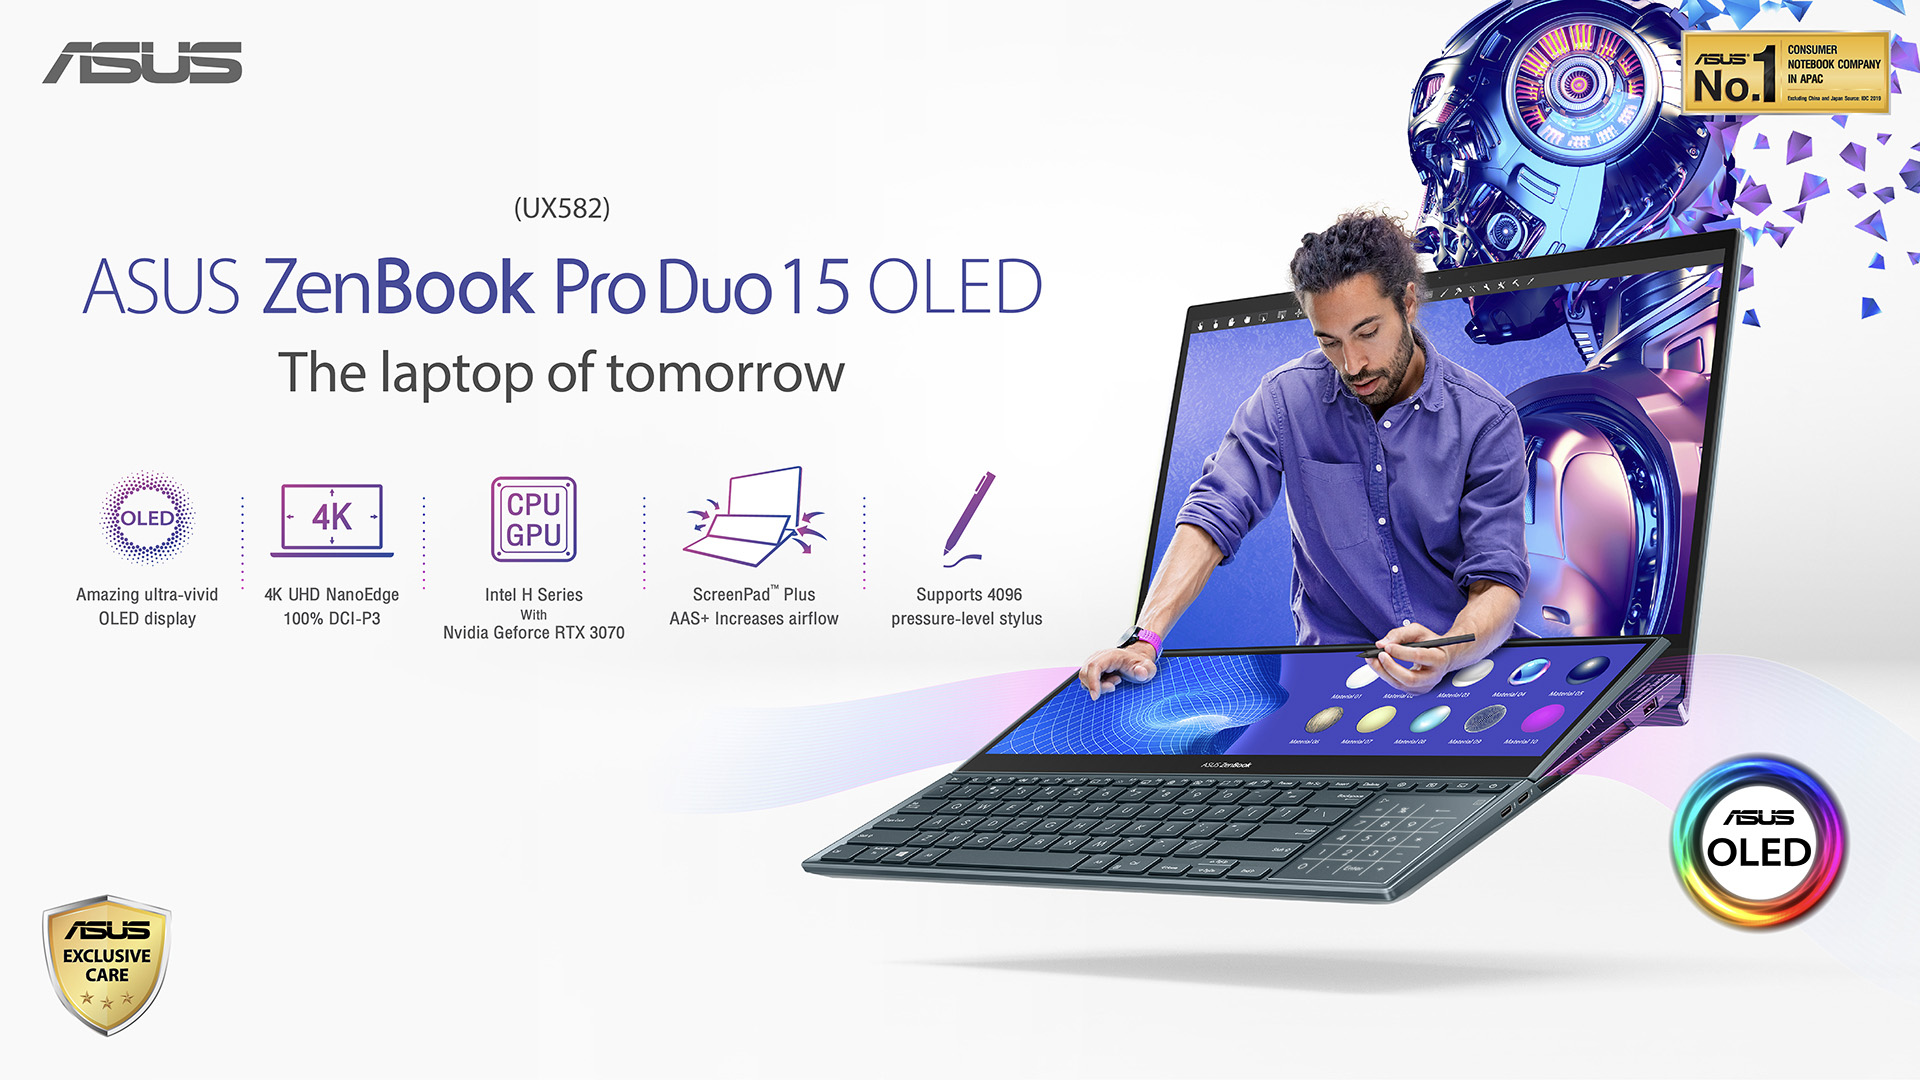 เปิดตัวแล้ว ZenBook Pro Duo 15 OLED (UX582) โน้ตบุ๊ก สองหน้าจอ Tilting ScreenPad Plus